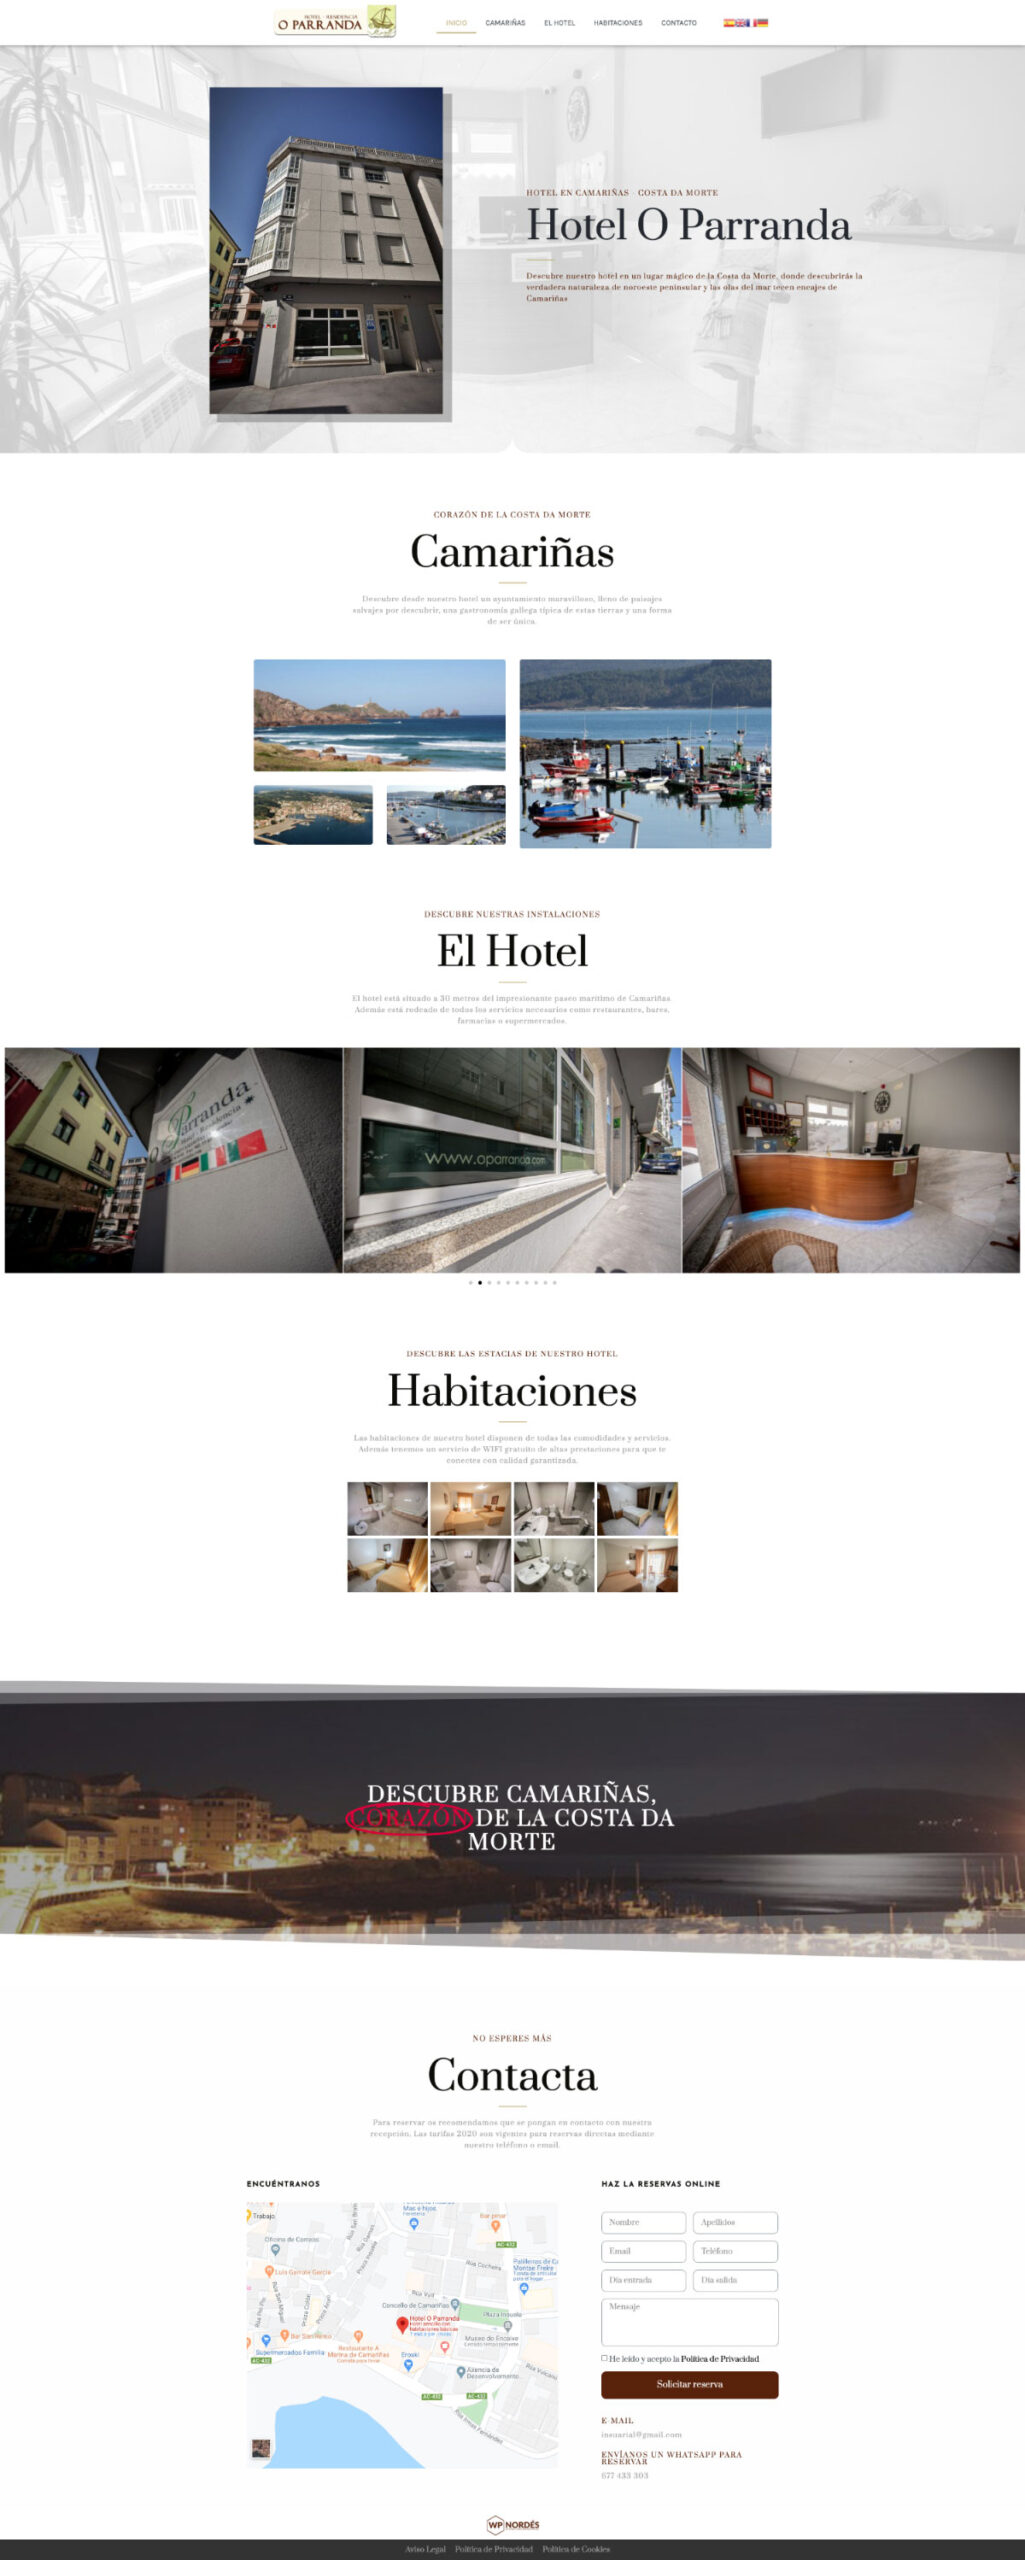 Captura Web Hotel O Parranda Camarinas Completa